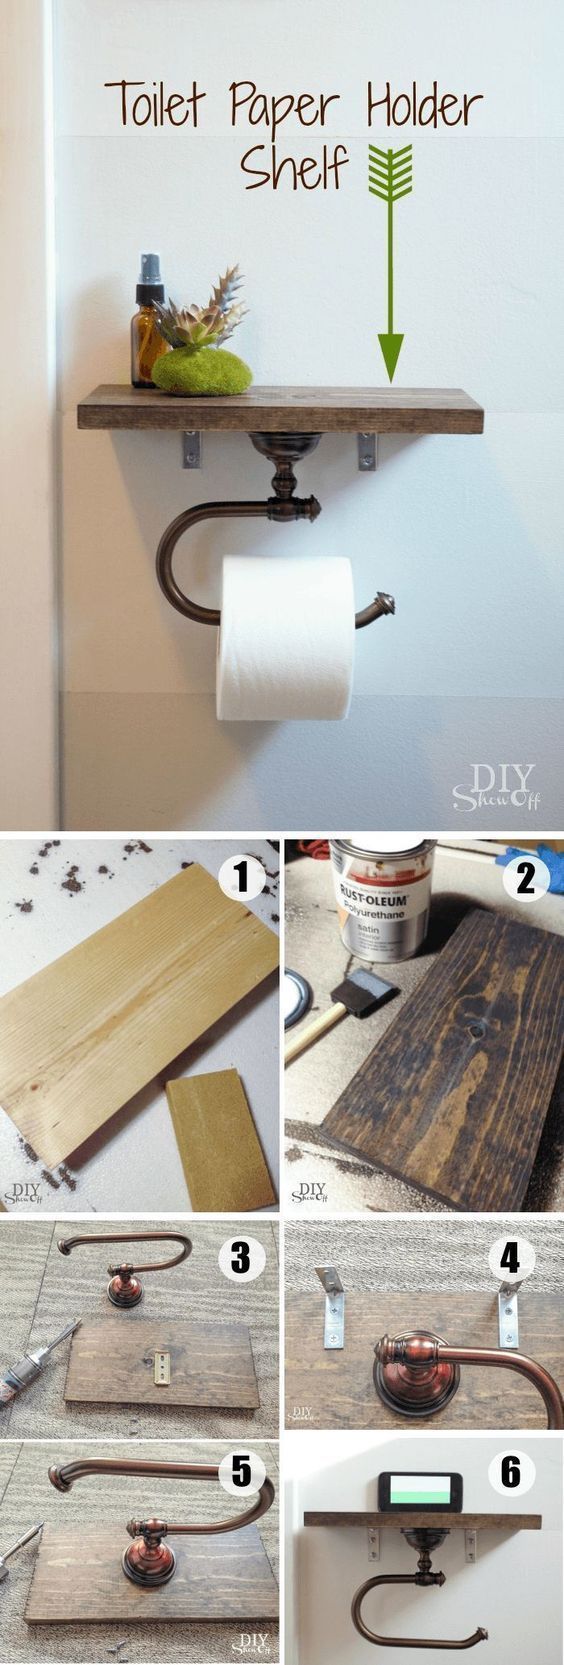 15 totally unusual diy toilet paper holders - Wood Design - 15 totally unusual diy toilet paper holders - Wood Design -   13 diy Headboard mirror ideas